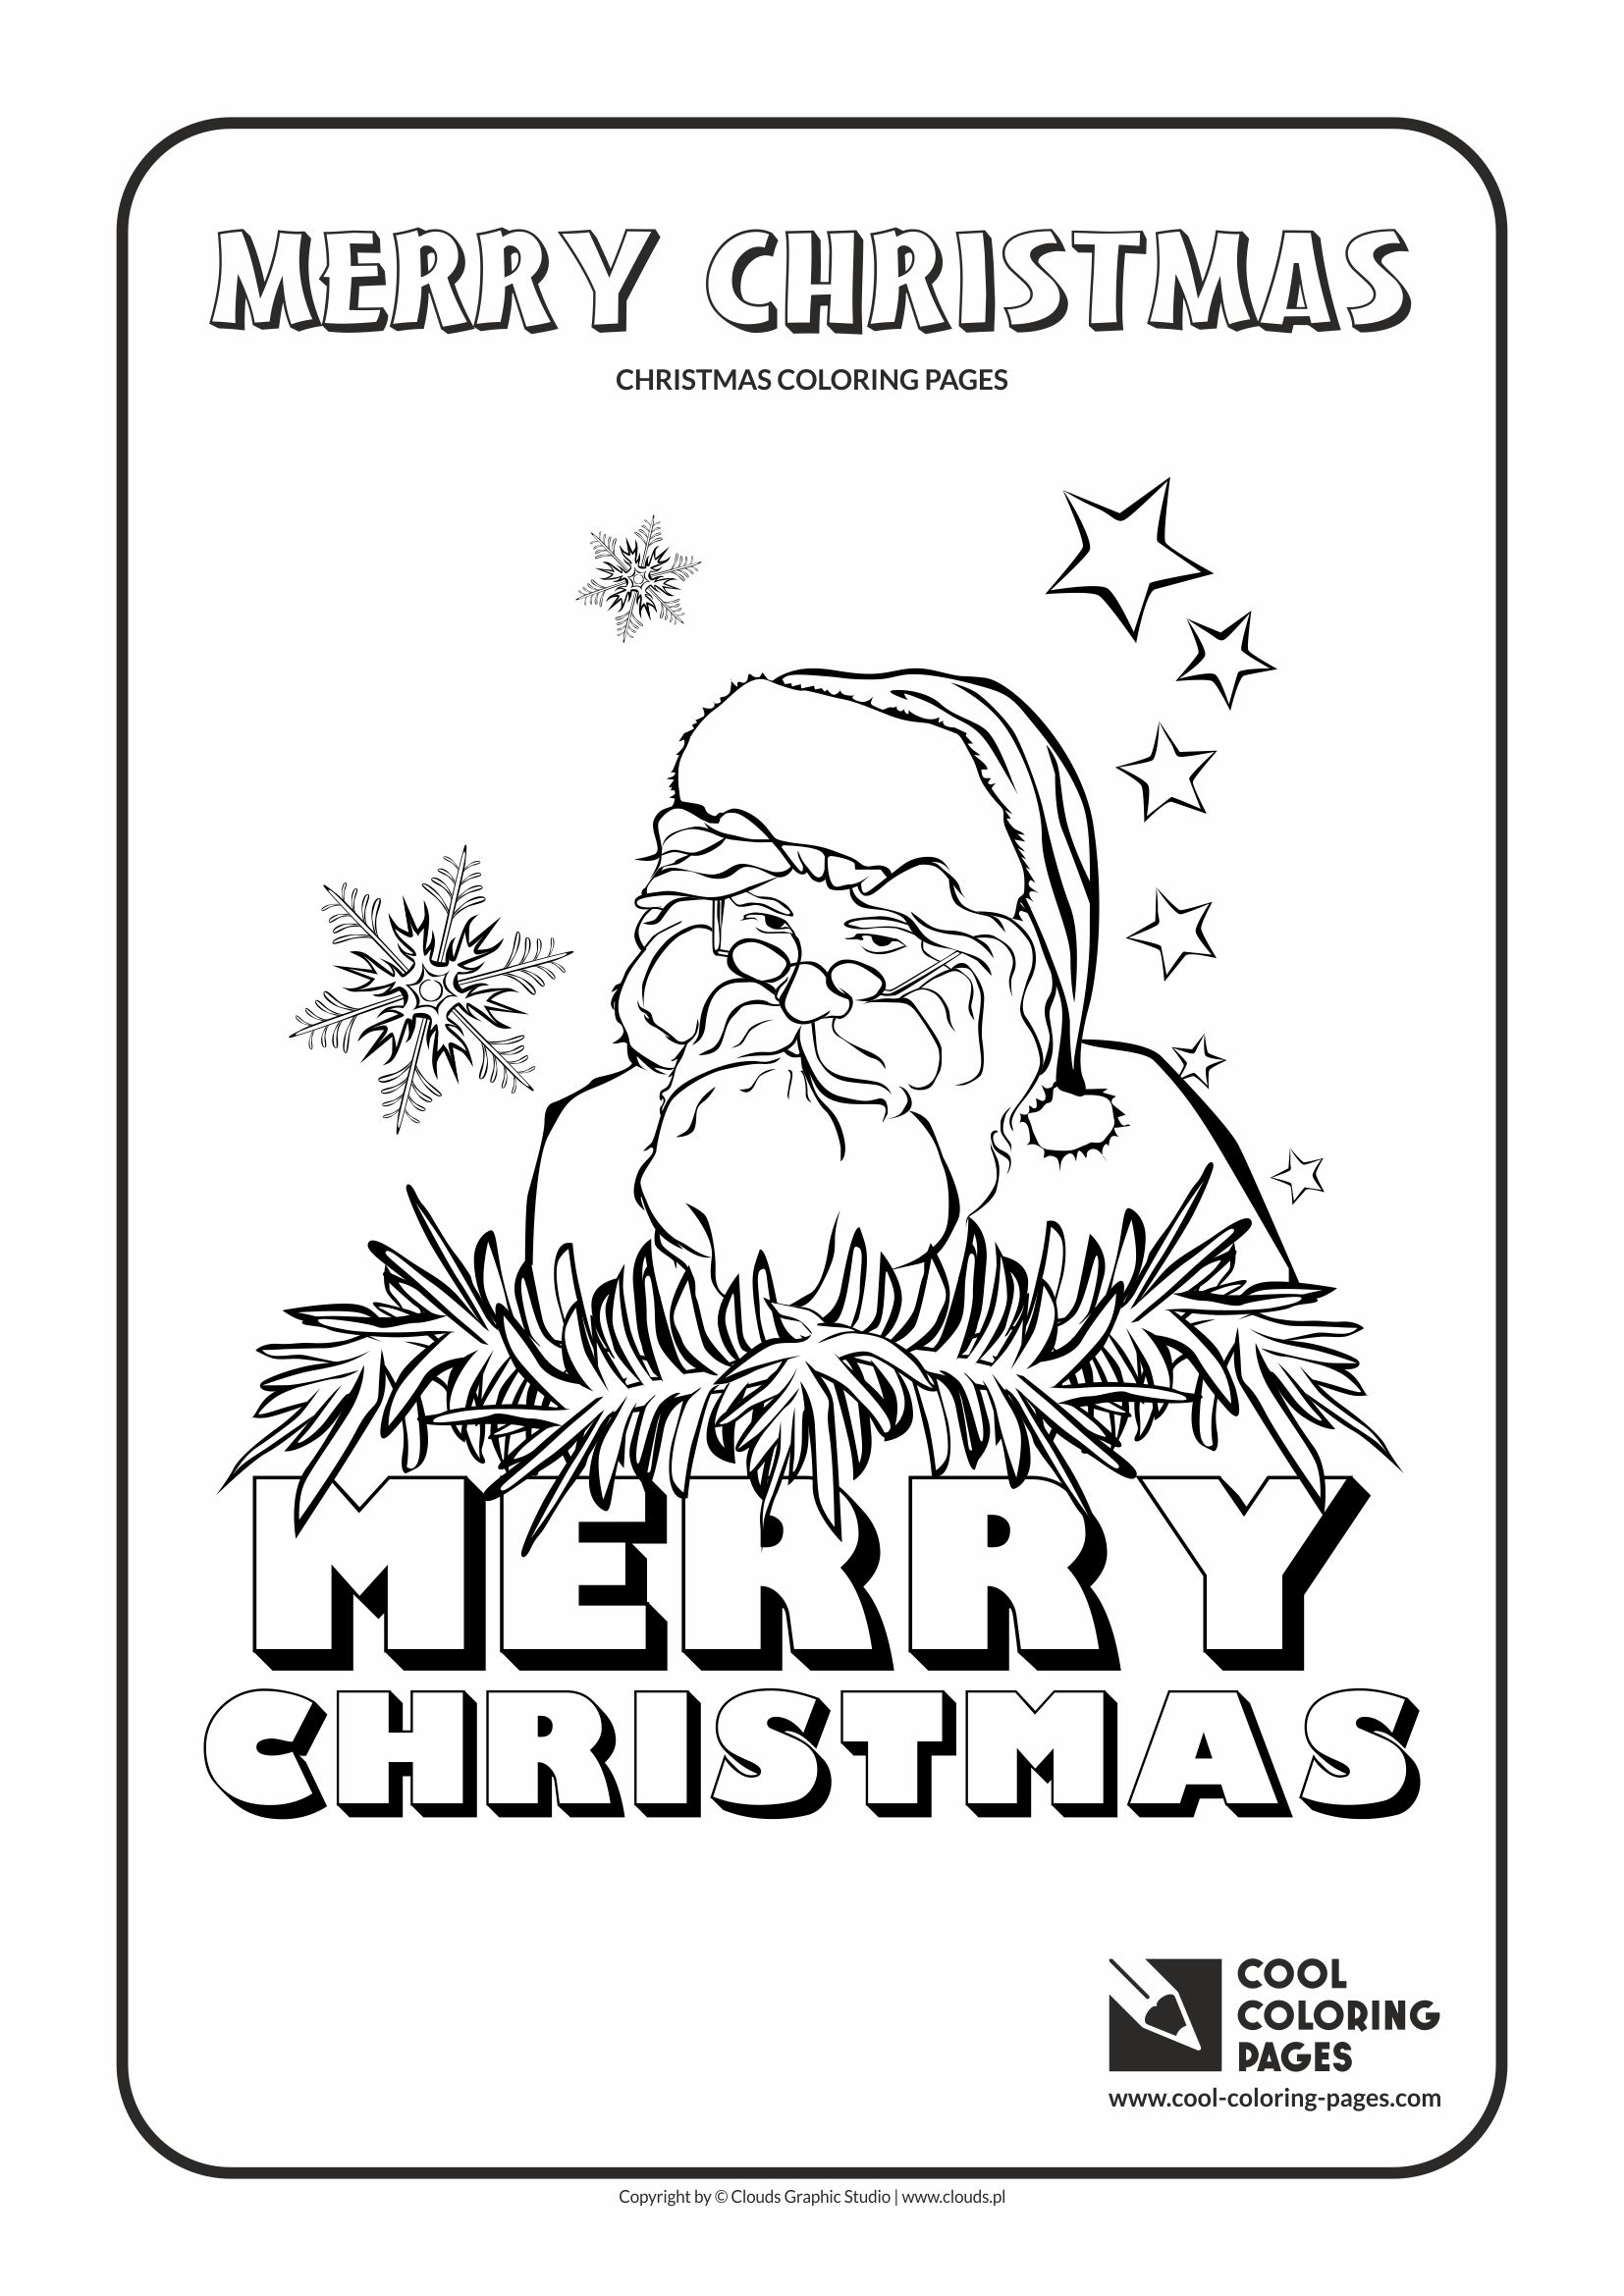 Cool Coloring Pages - Holidays / Santa Claus no 1 / Coloring page with Santa Claus no 1